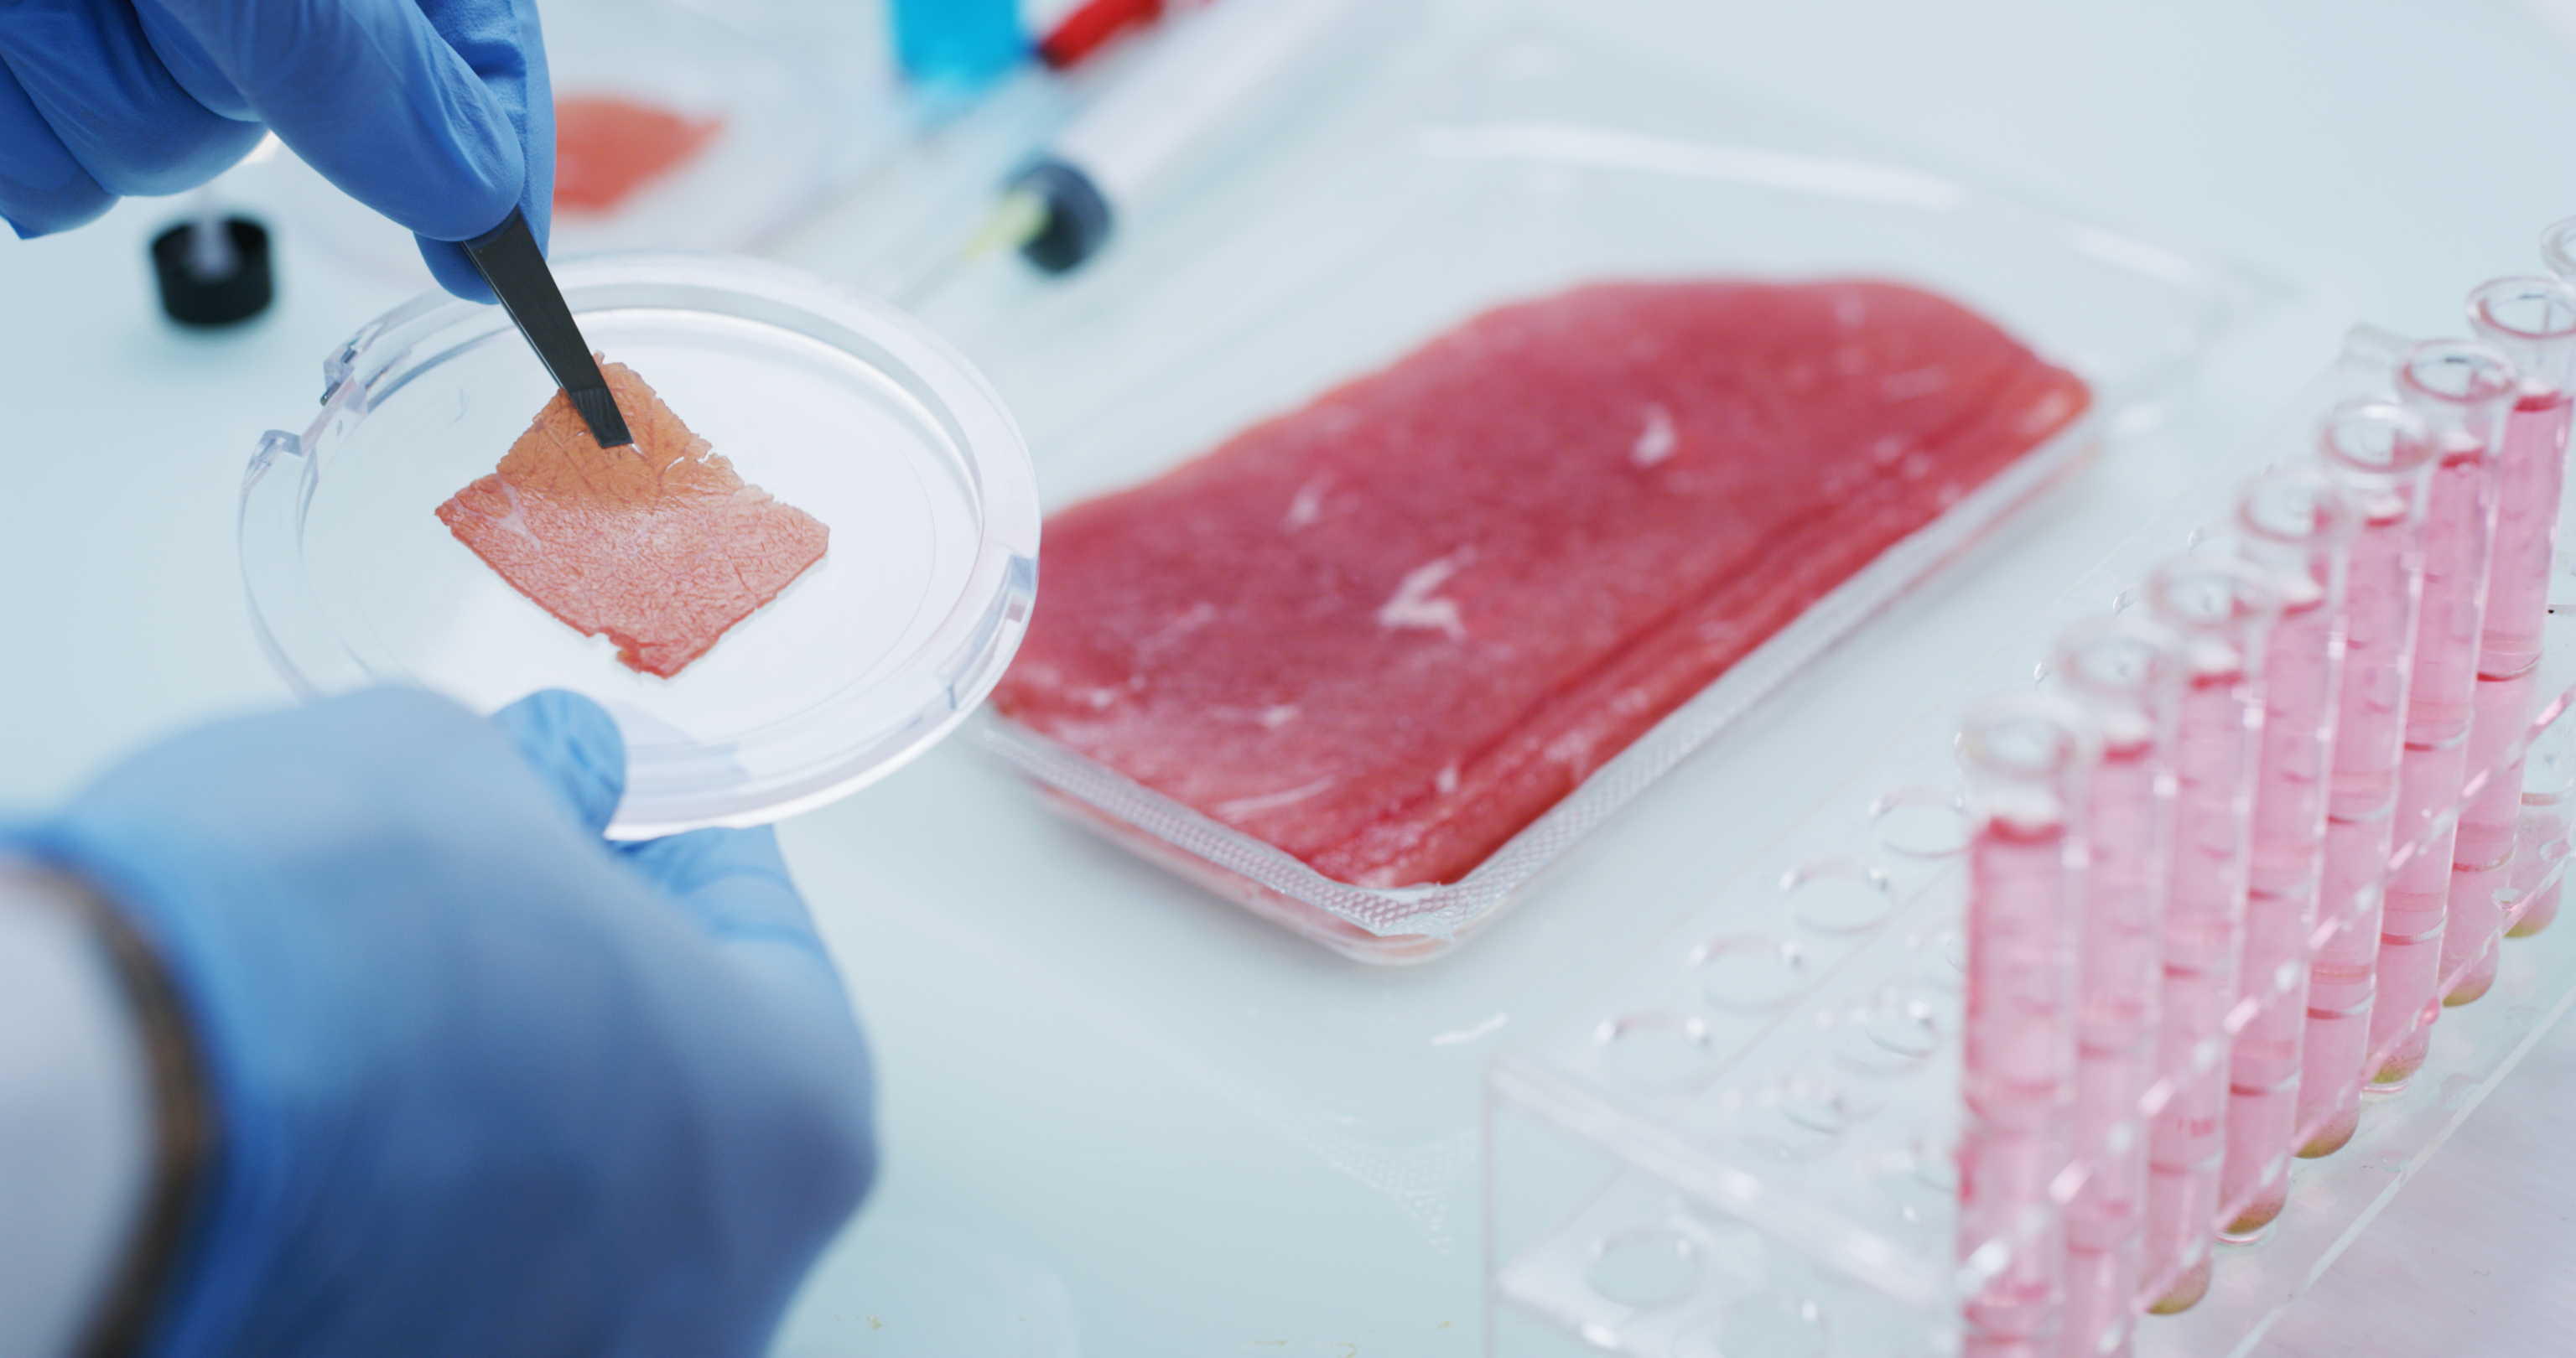 La carne impresa en 3D o cultivada en el laboratorio son dos de las líneas en que la innovación está reinventando la alimentación humana